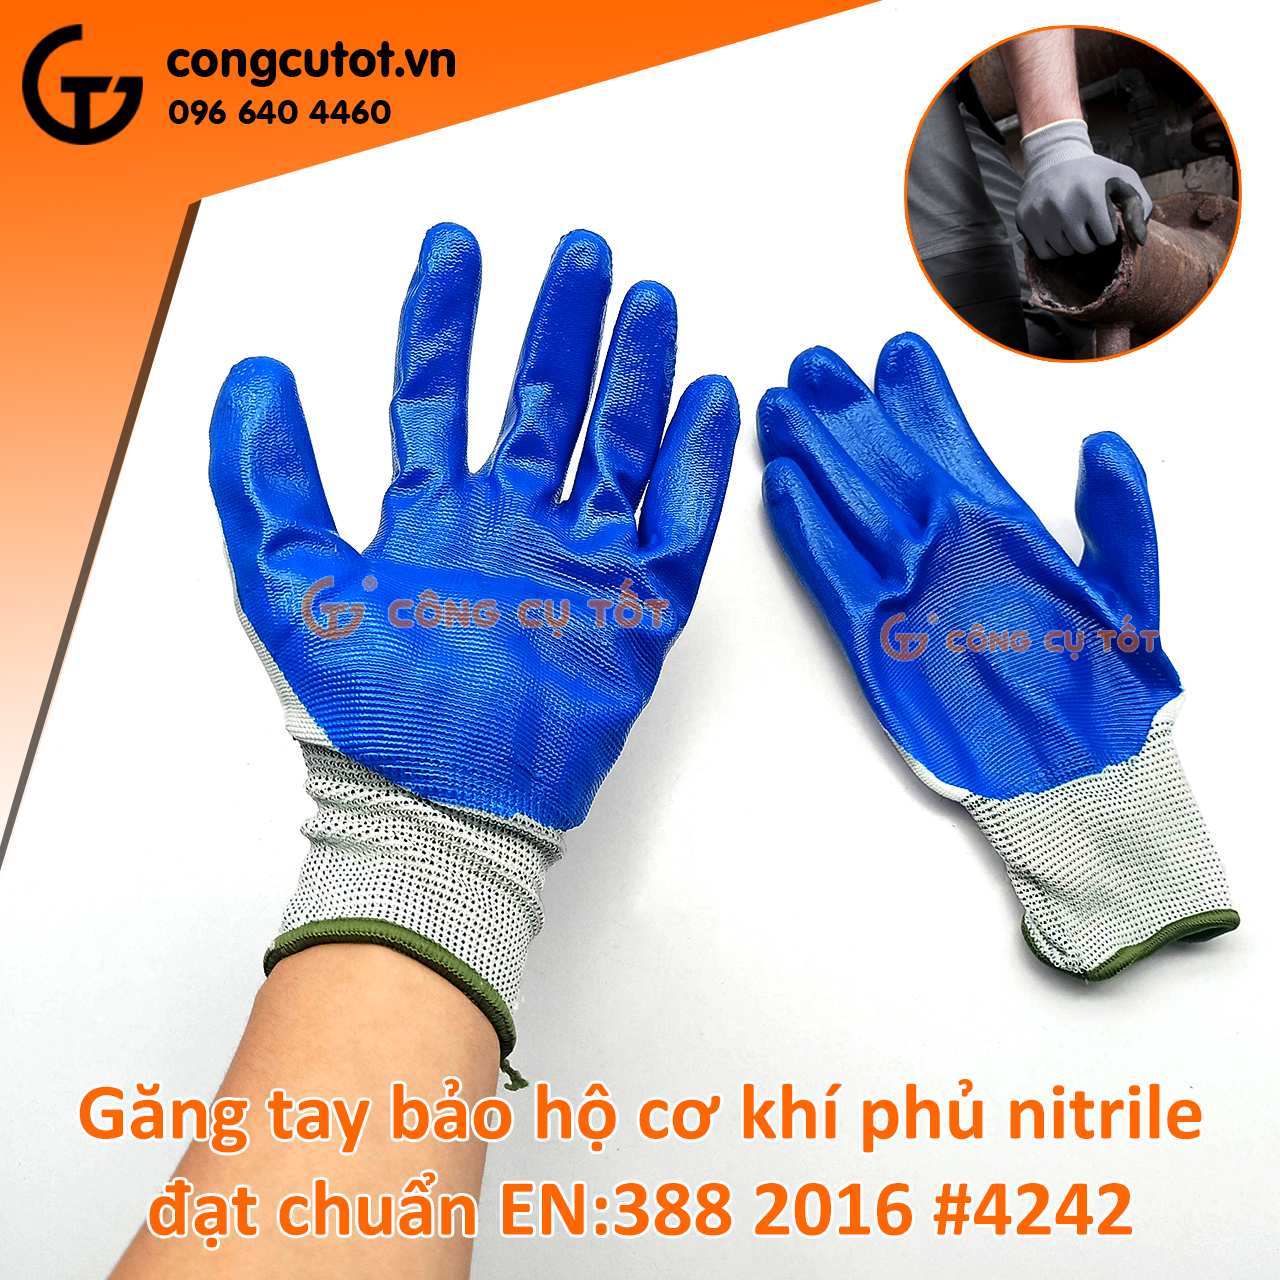 Găng tay bảo hộ cơ khí Nitrile đạt chuẩn EN 388:2016 #4242 màu xanh biển